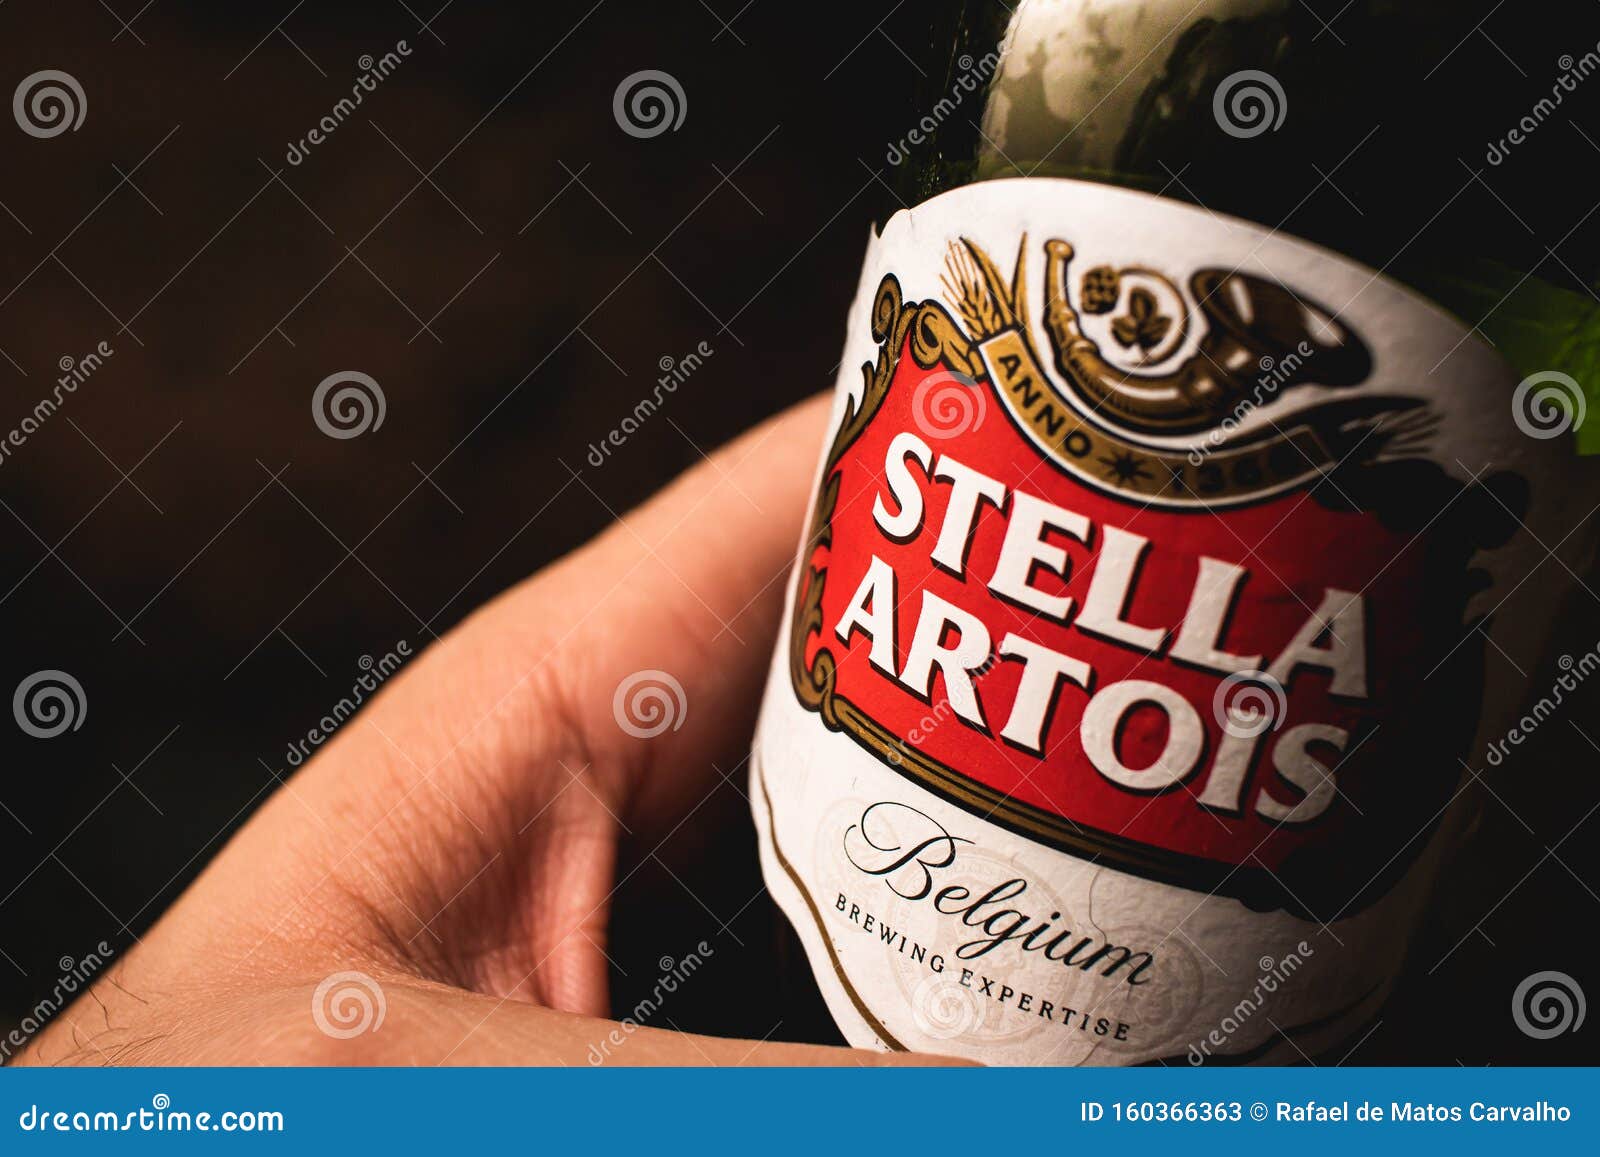 Featured image of post Stella Artois Fotos De Fake Tomando Cerveja Stella artois st l r tw es una marca de cerveza lager de 5 4 grados alcoh licos elaborada inicialmente en lovaina b lgica en 1366 como una cerveza para la temporada navide a stella en lat n estrella por la estrella de bel n